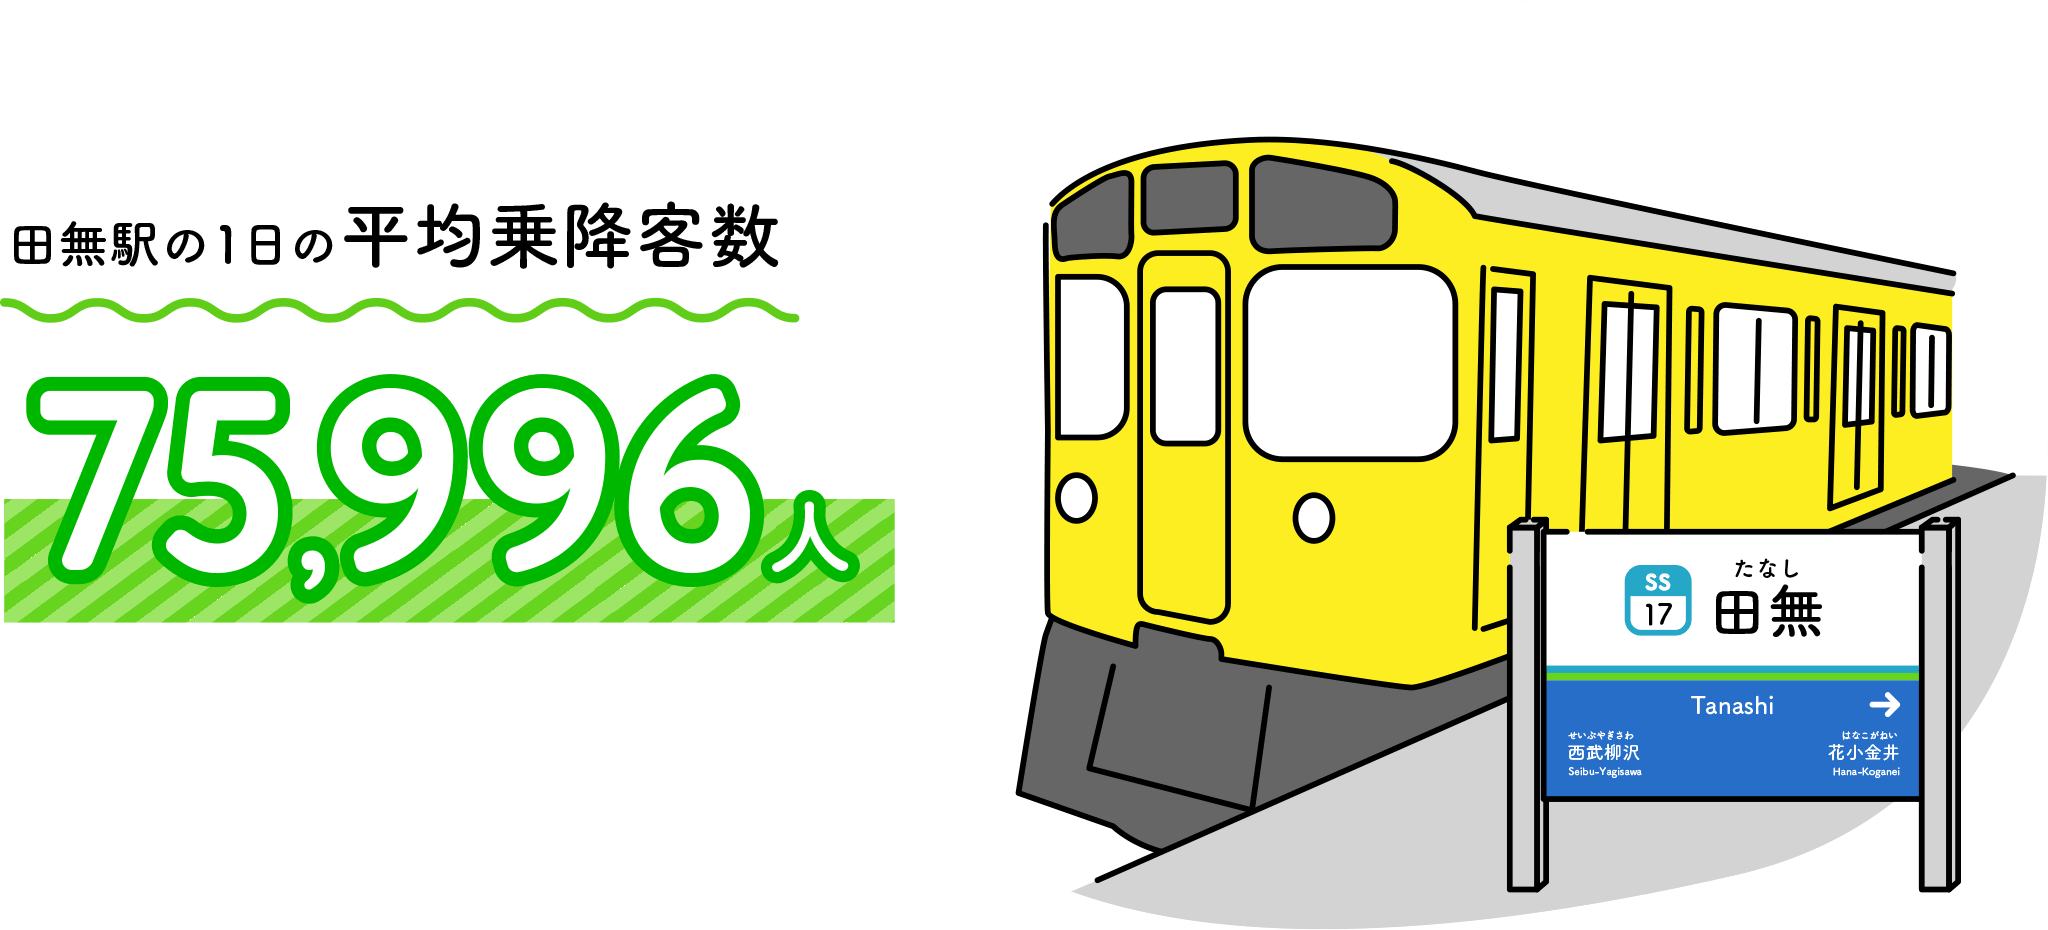 田無駅の1日の平均乗降客数75,996人（西武線全92駅のうち11位）